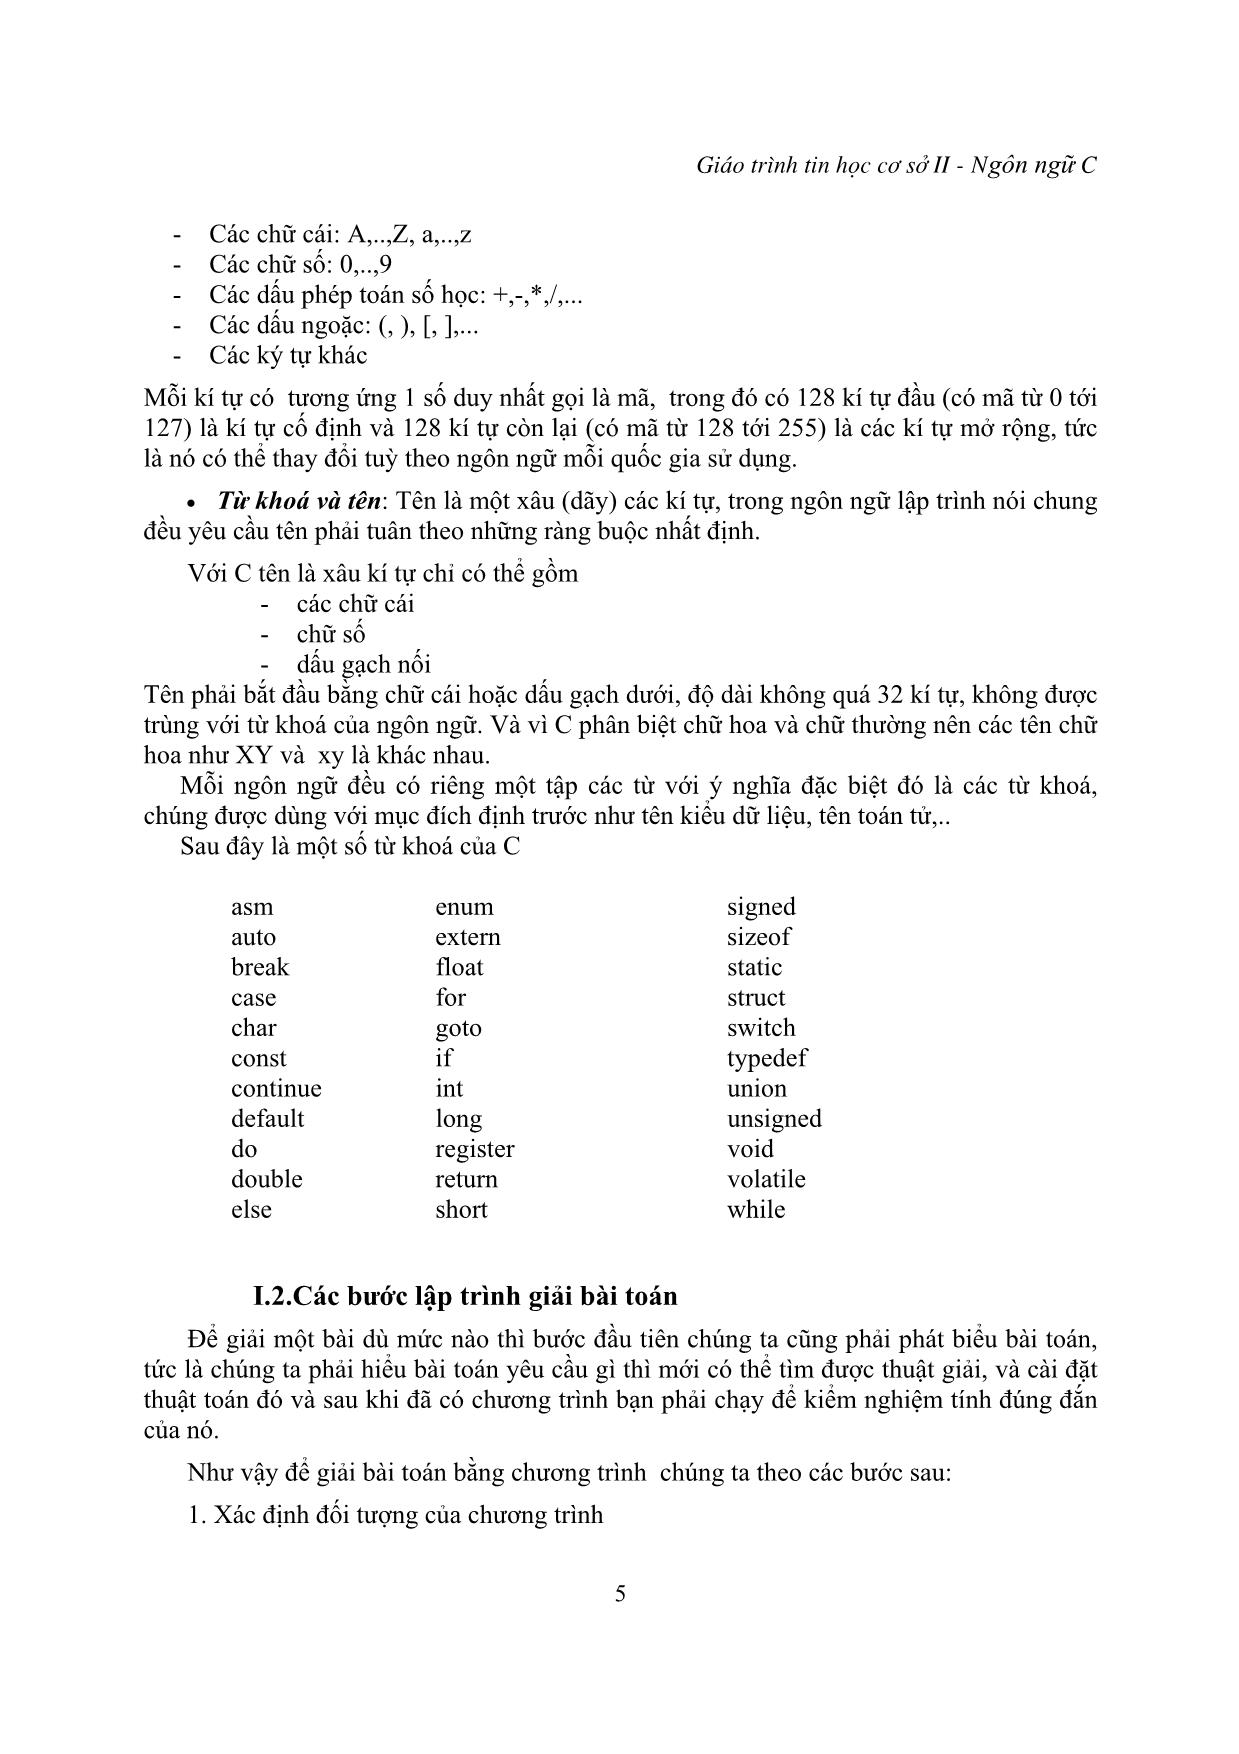 Giáo trình Tin học cơ sở - Phần lập trình trên ngôn ngữ C trang 5